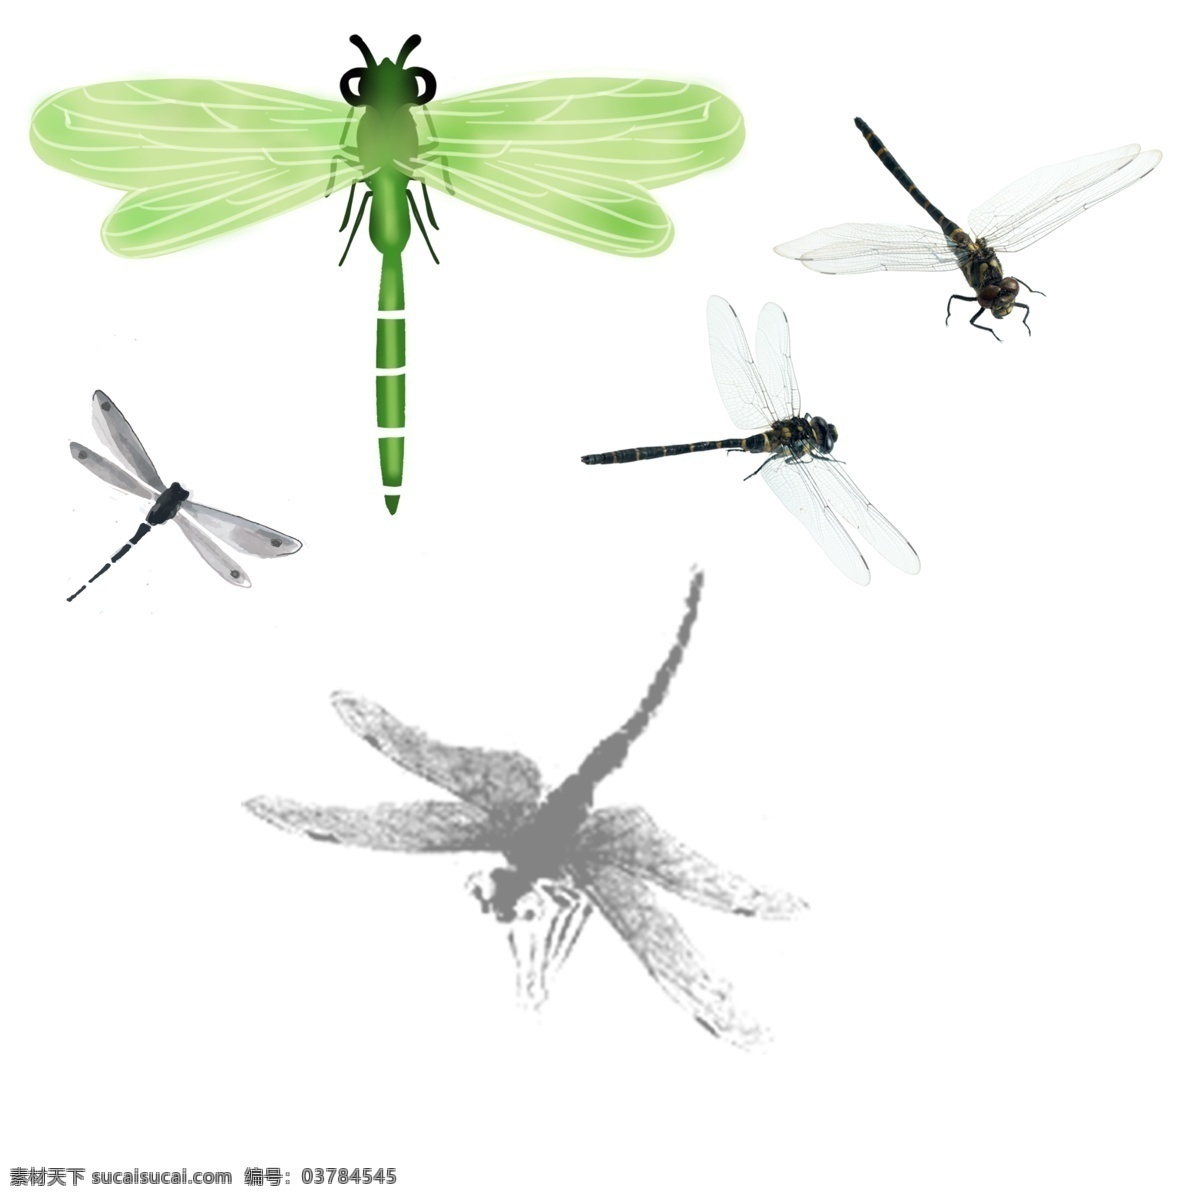 绿色蜻蜓 红色蜻蜓 翅膀 透明翅膀 绿头 震动 飞行 矢量图 卡通 漫画 游戏 生物世界 分层